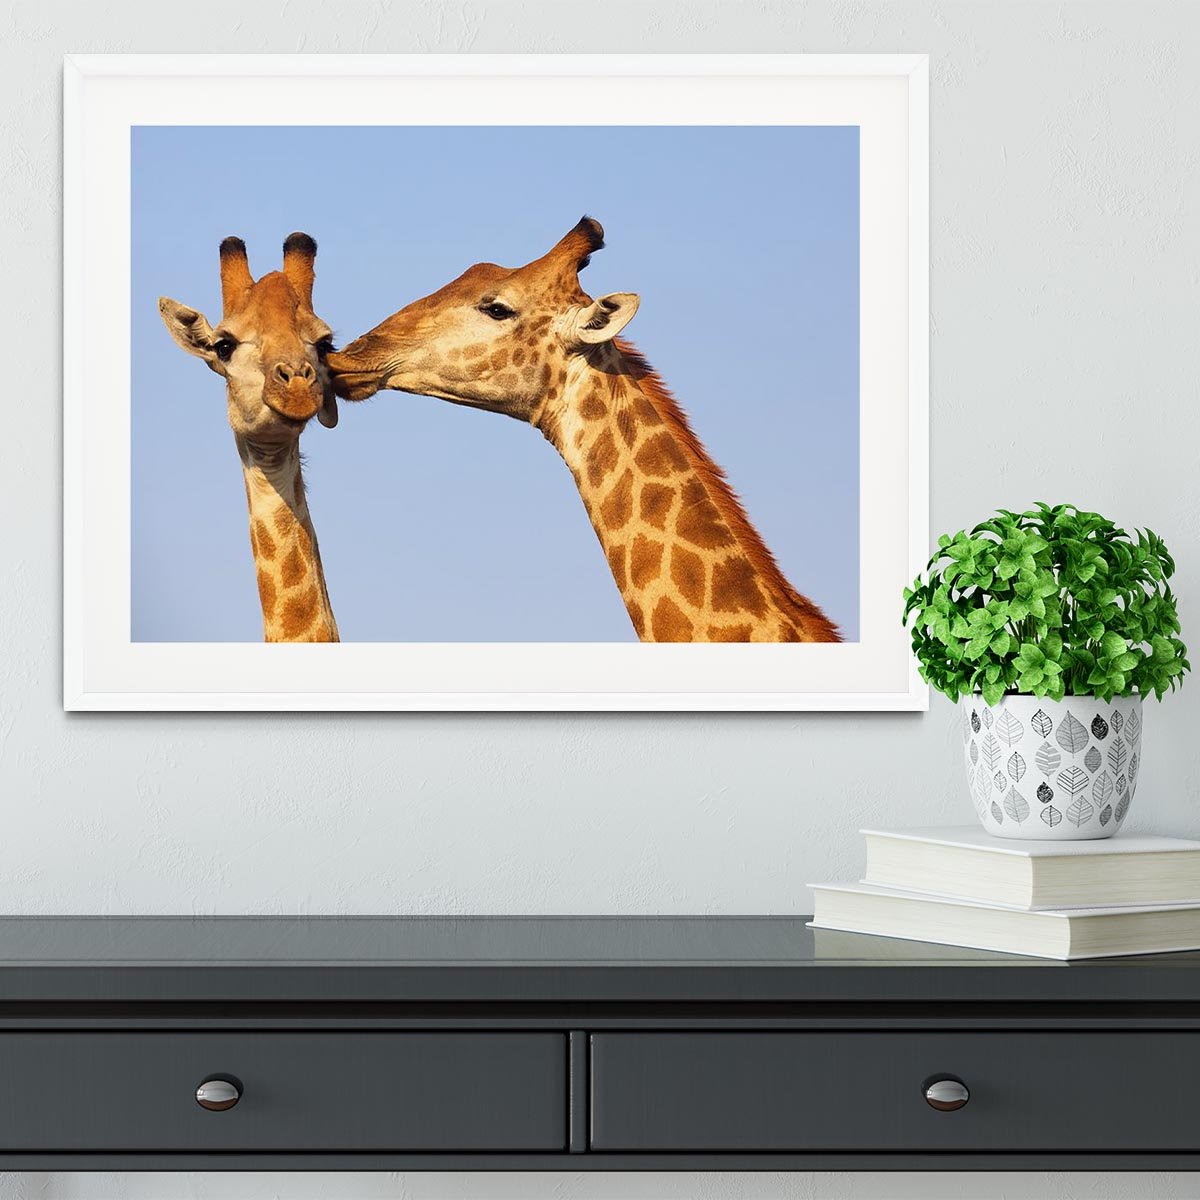 Giraffe pair bonding Framed Print - Canvas Art Rocks - 5